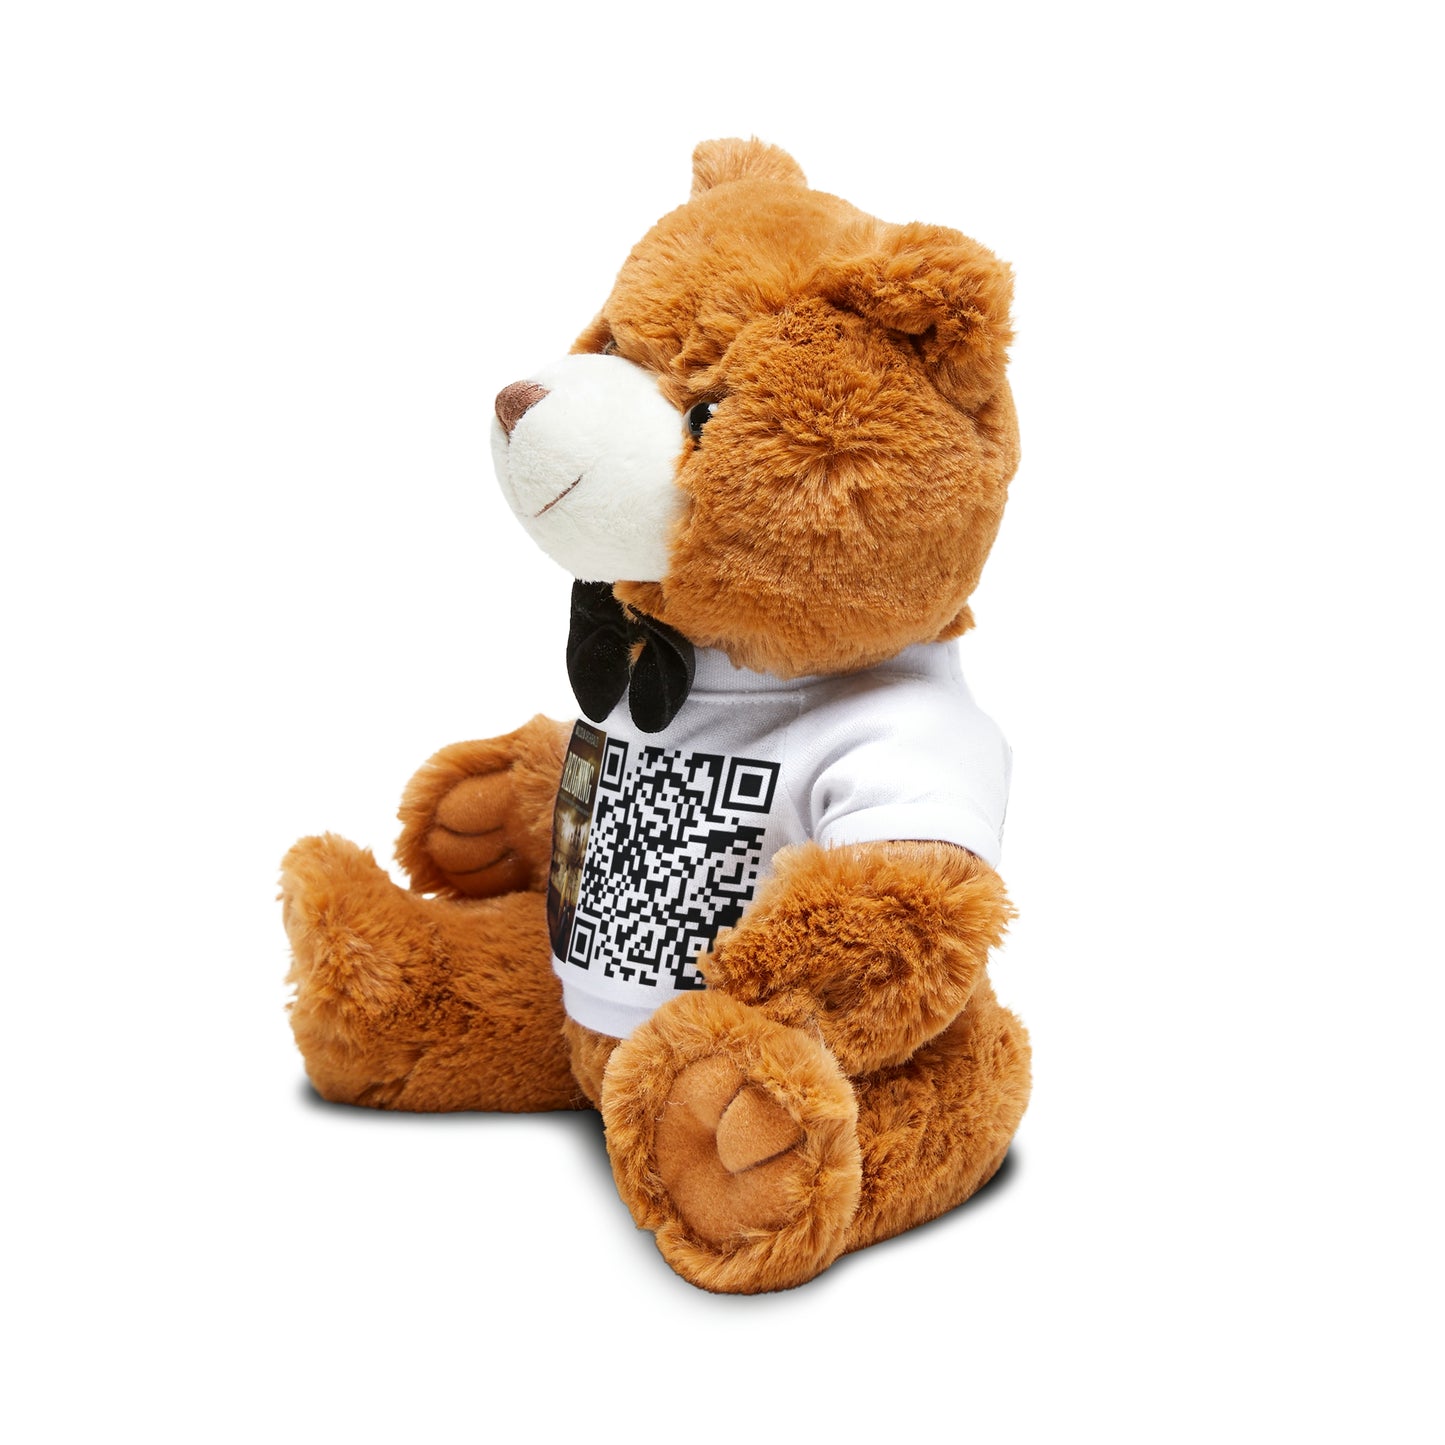 Reigning - Teddy Bear